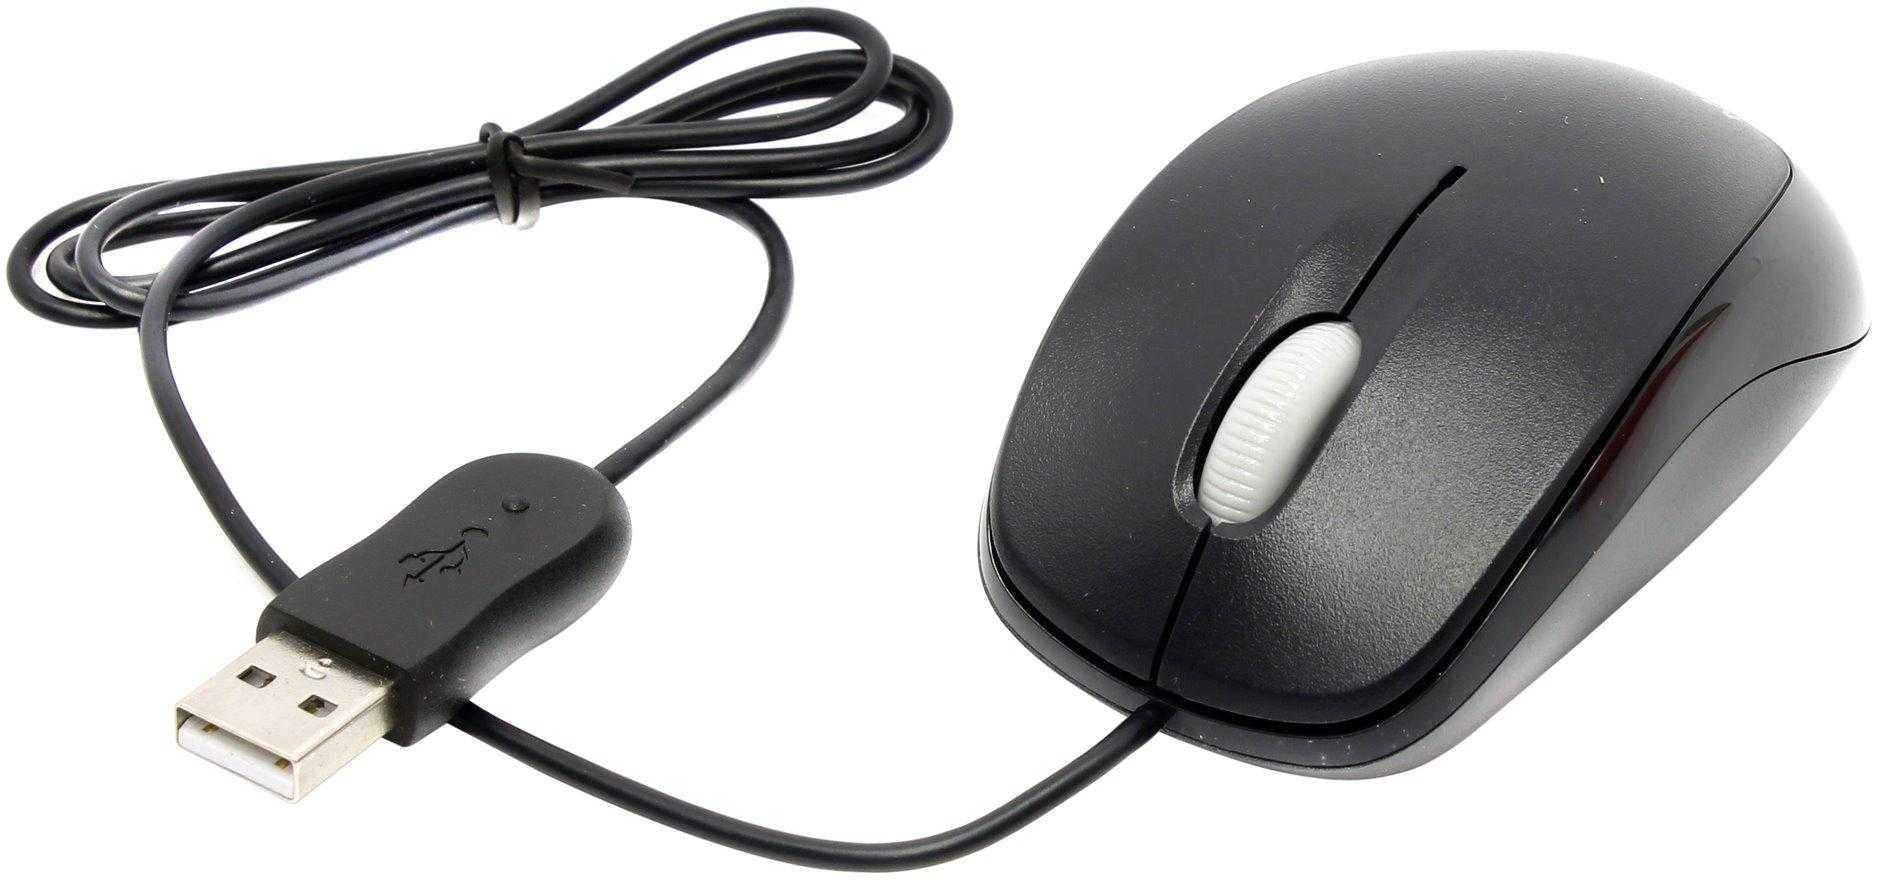 Проводная мышь microsoft compact optical 500 black — купить, цена и характеристики, отзывы